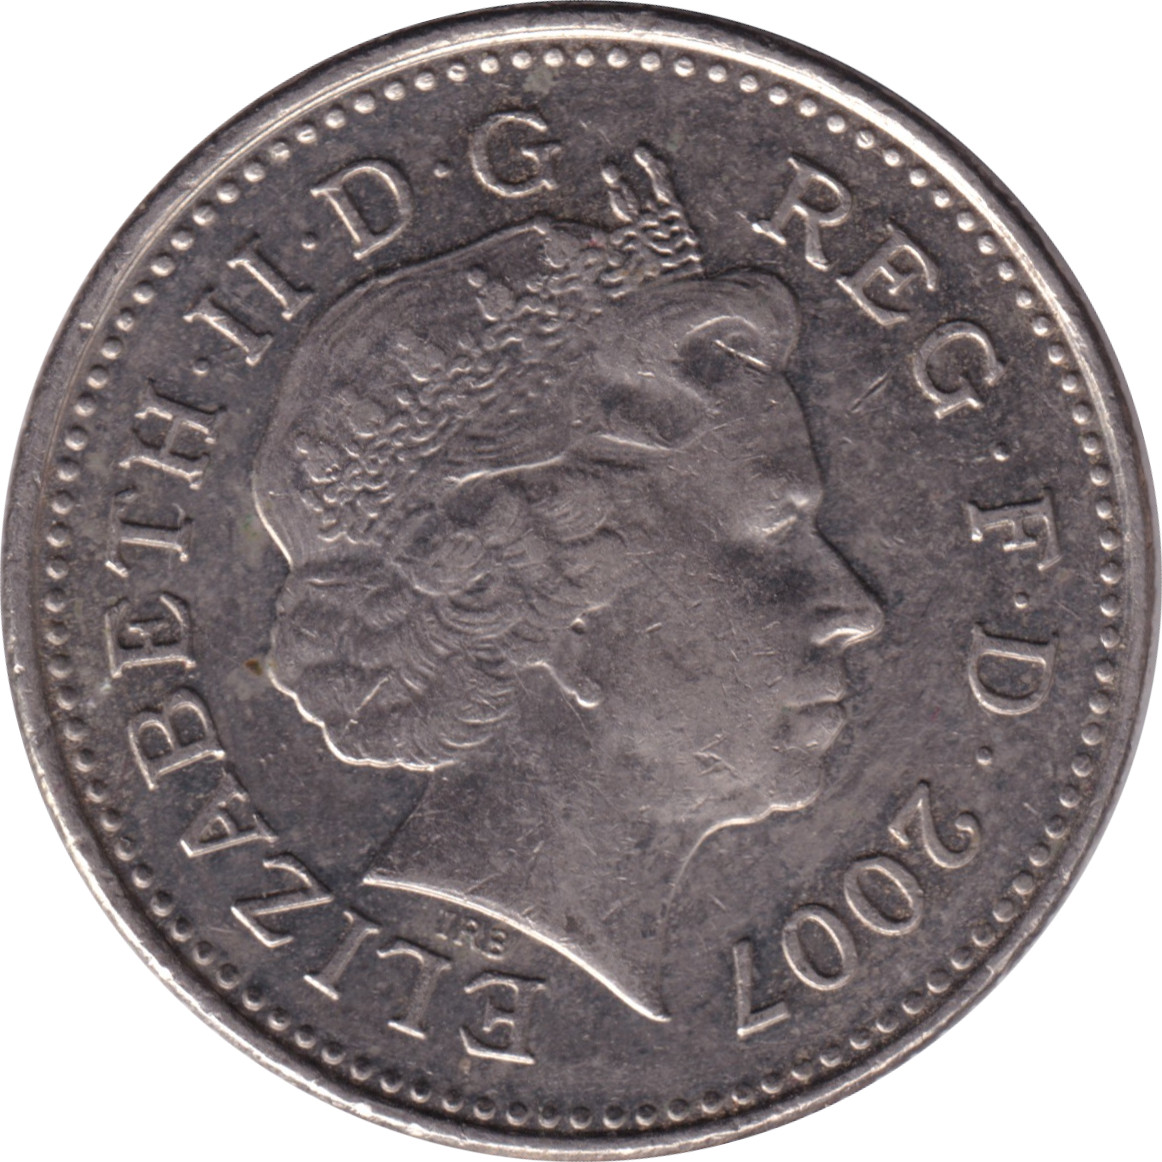 10 pence - Elizabeth II - Tête agée - Lion